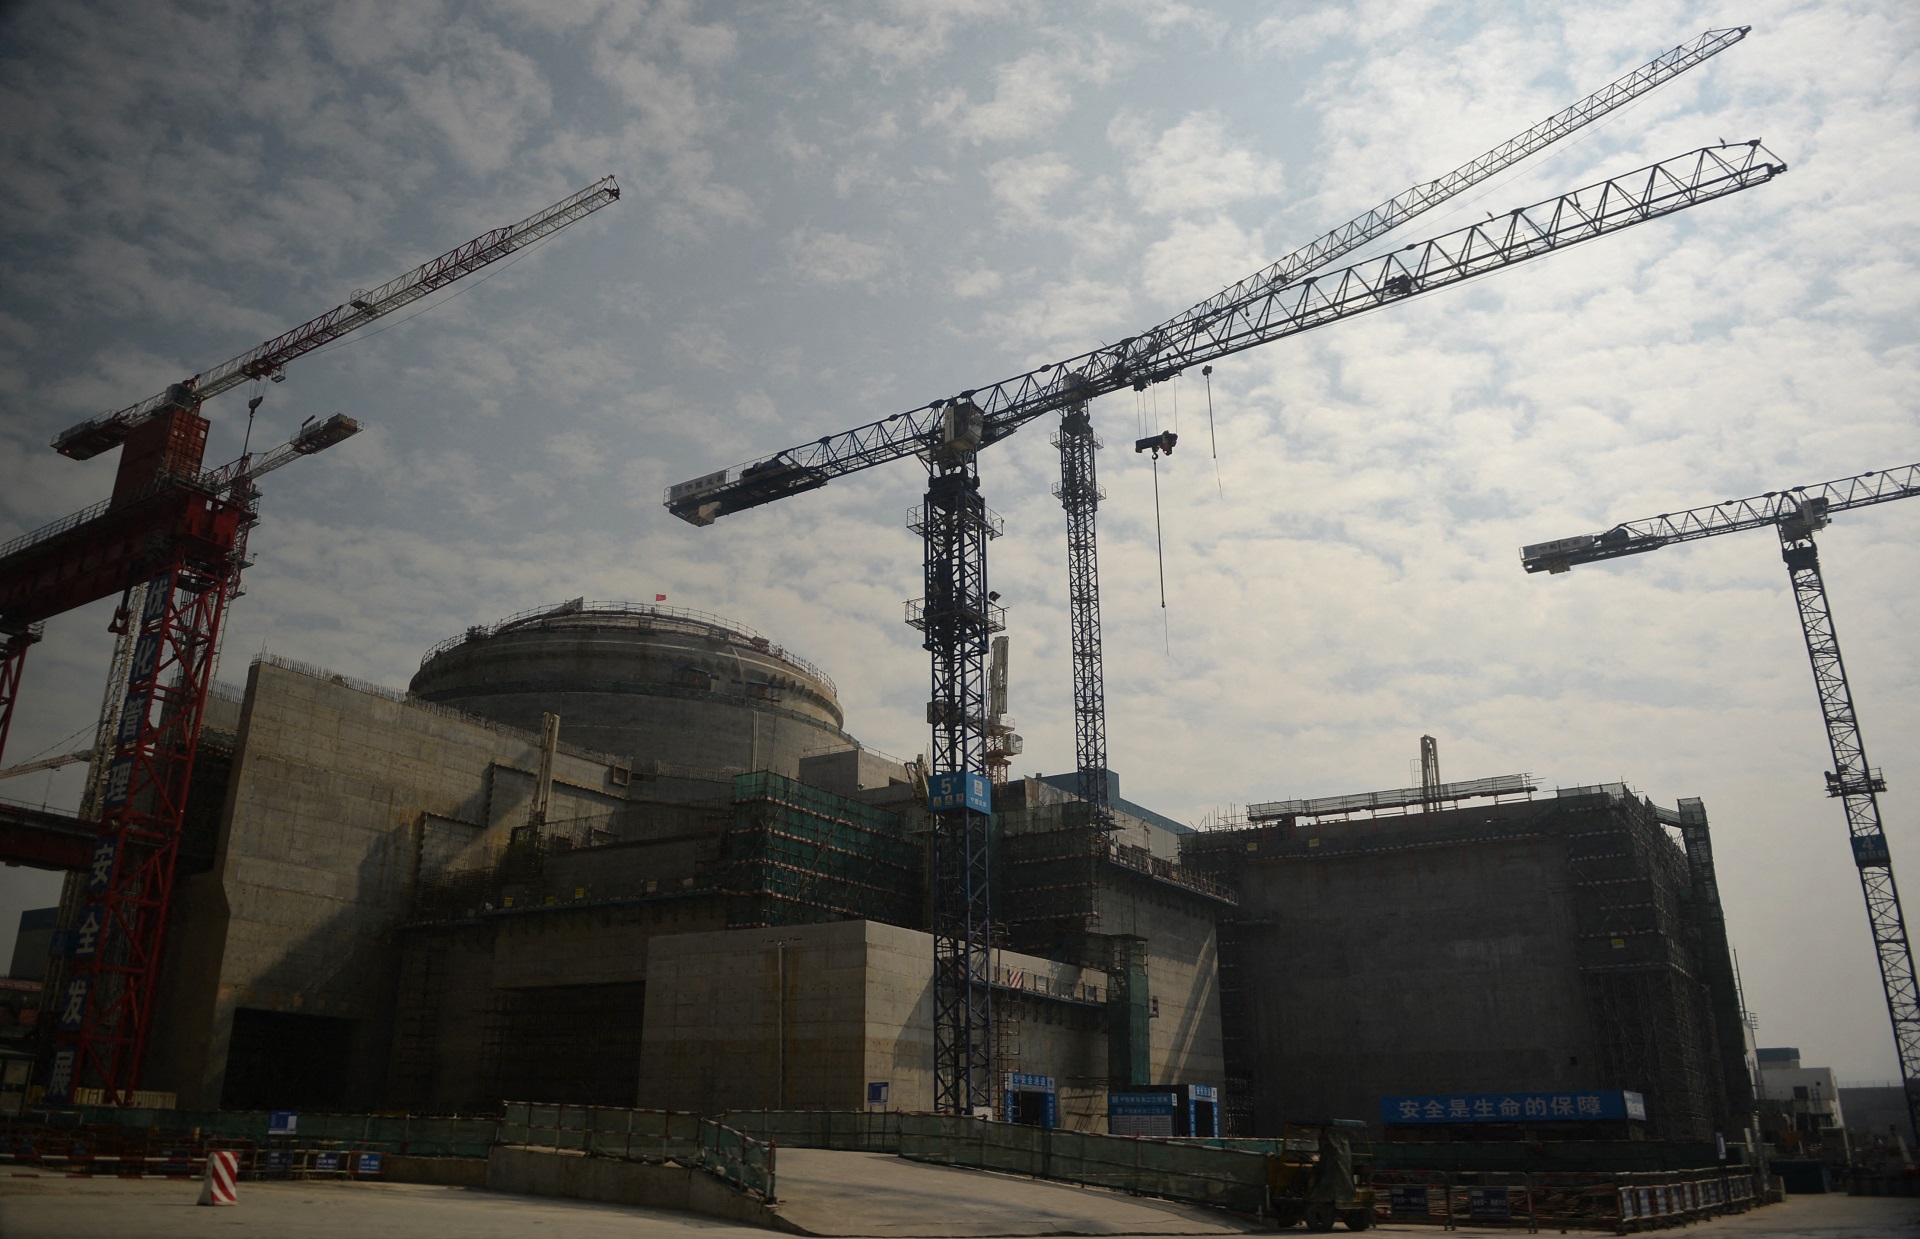 La central nuclear conjunta chino-francesa de Taishan se está construyendo en las afueras de la ciudad de Taishan en la provincia de Guangdong. (Photo by PETER PARKS / AFP)